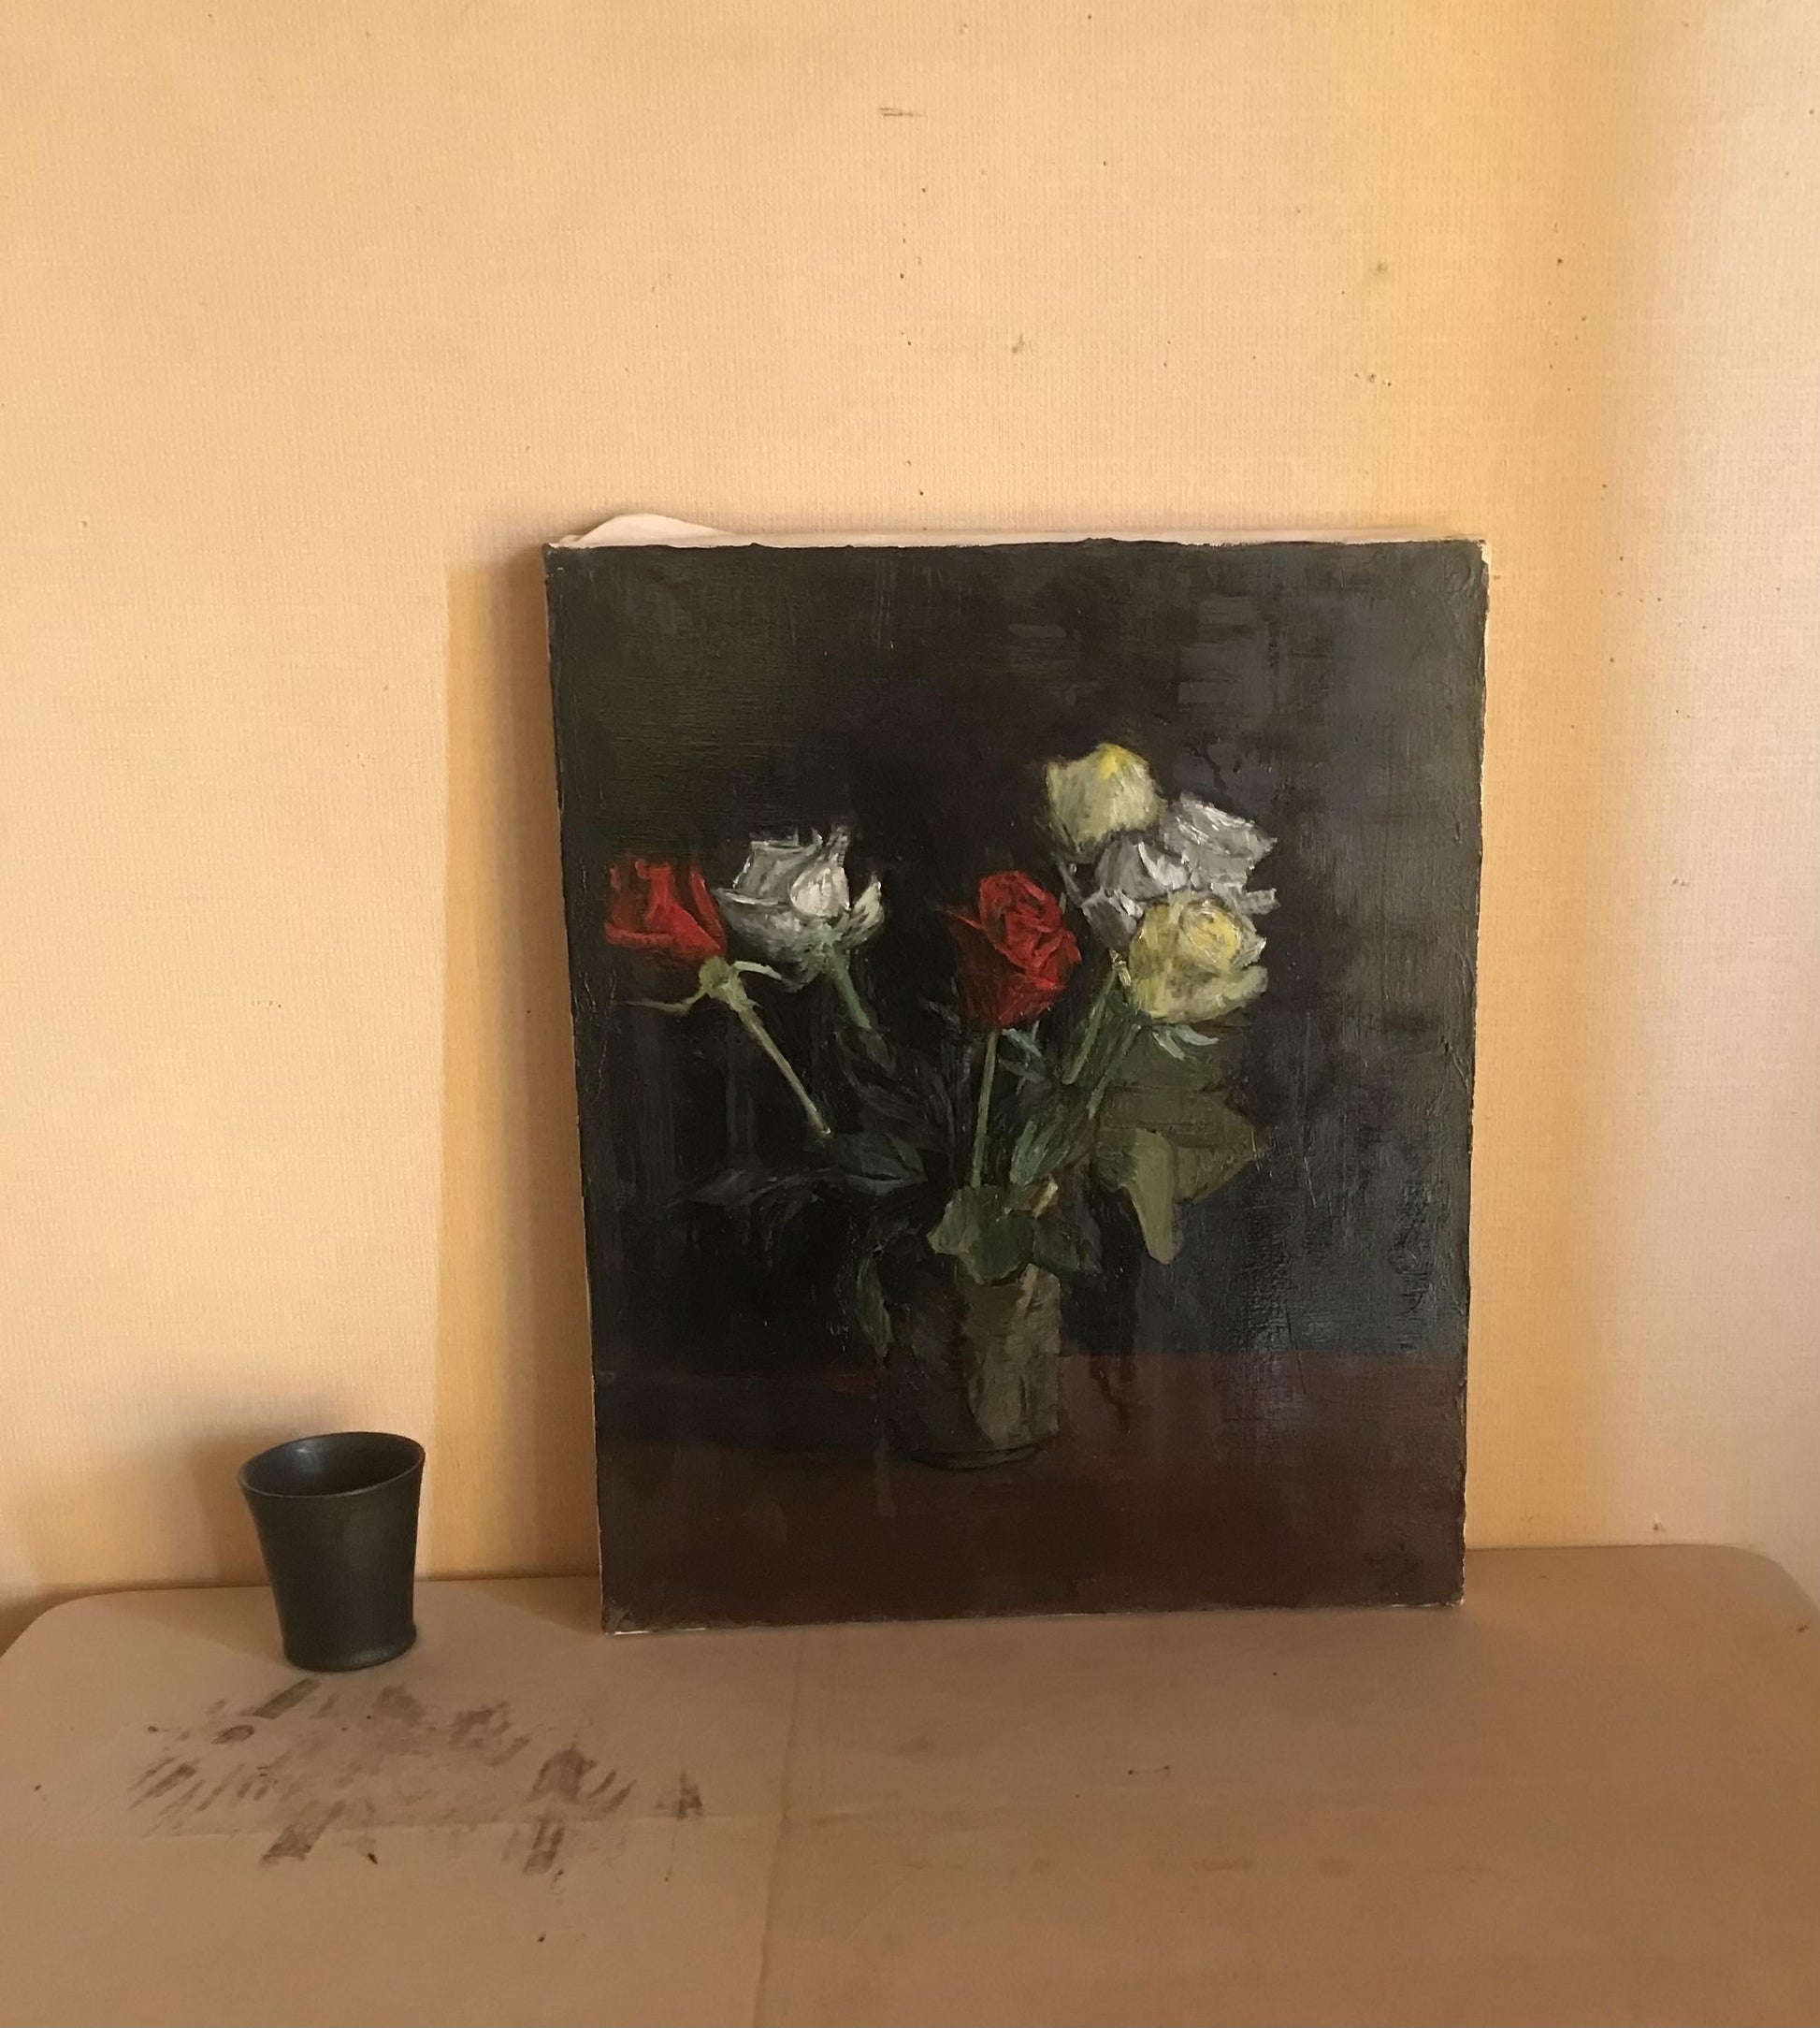 6本の薔薇 - FROM ARTIST